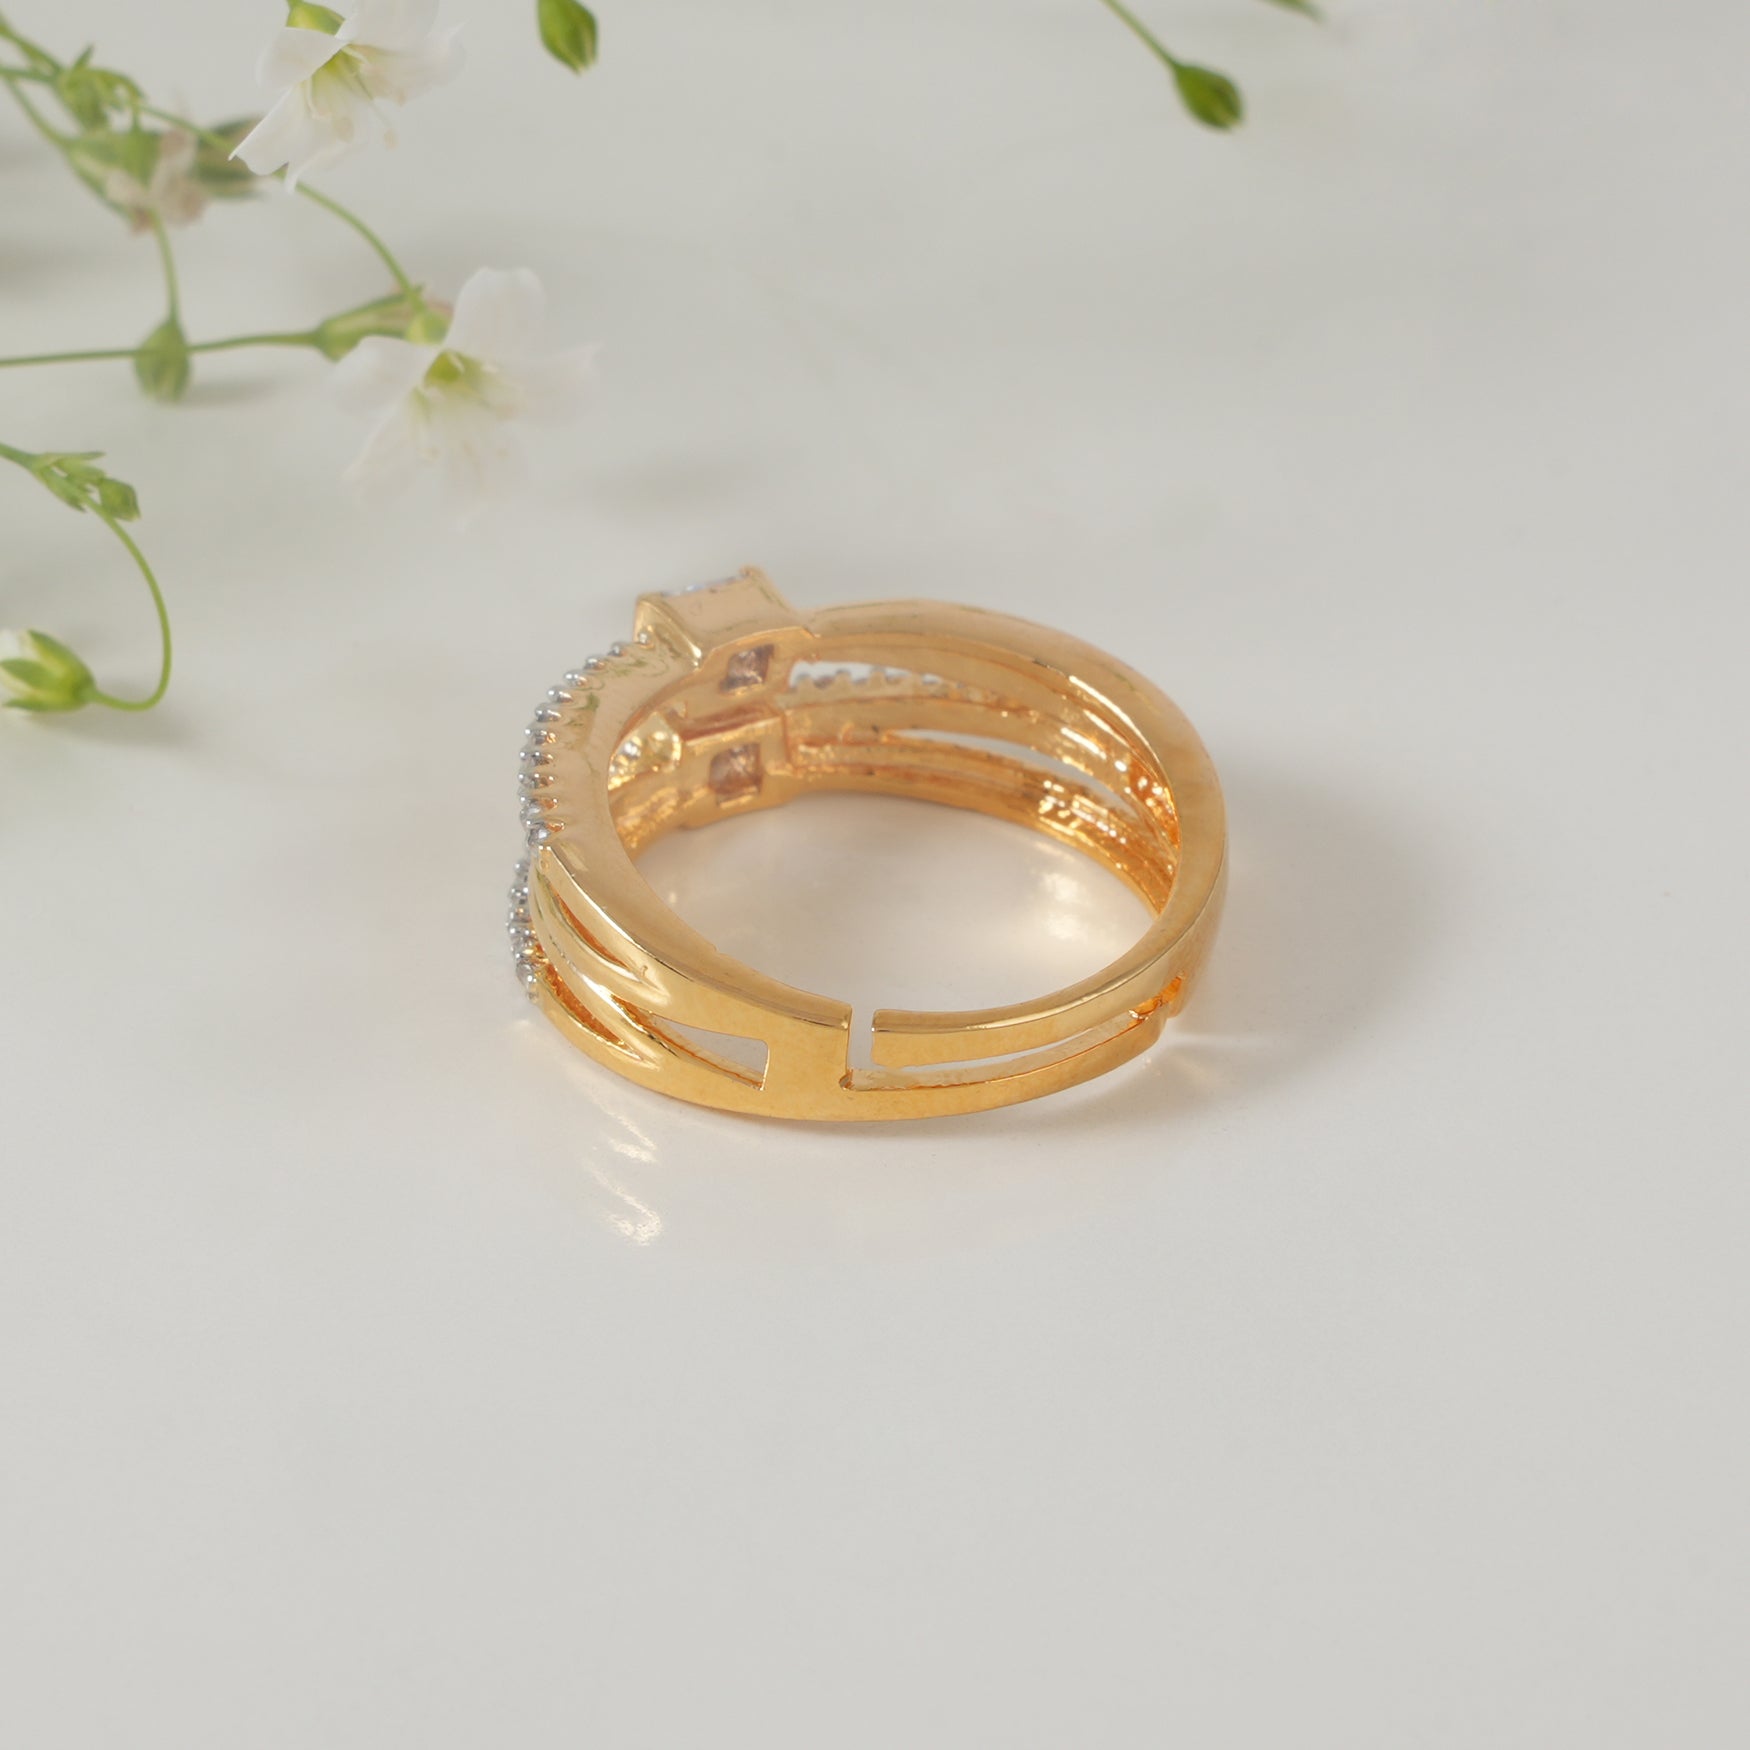 Delicate diamond finger ring for women